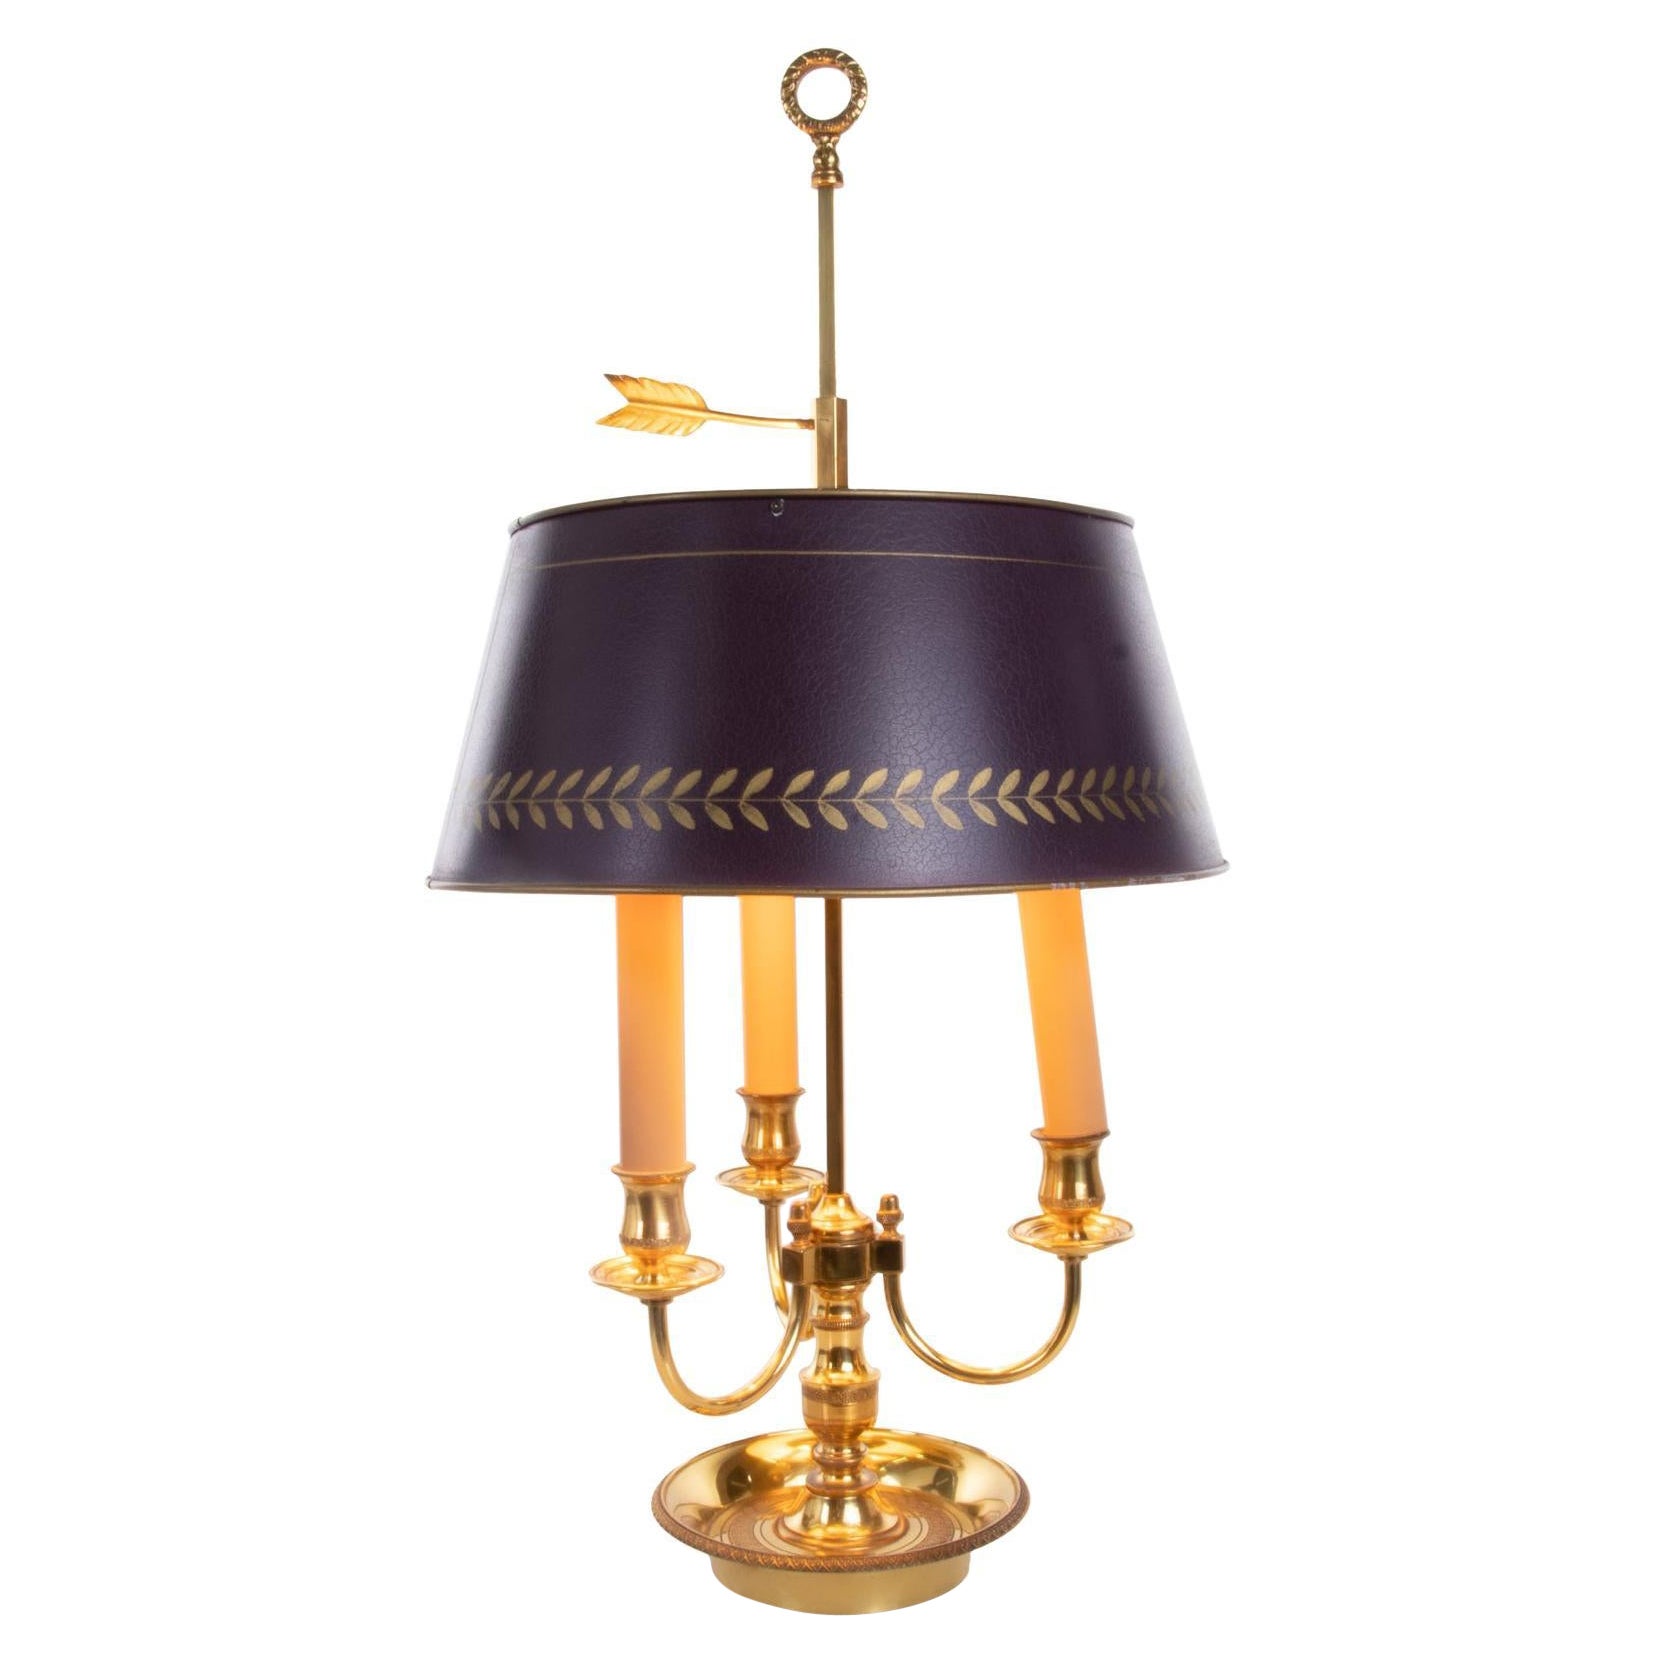 Lampe bouillotte française de style Louis XV en bronze doré et tôle